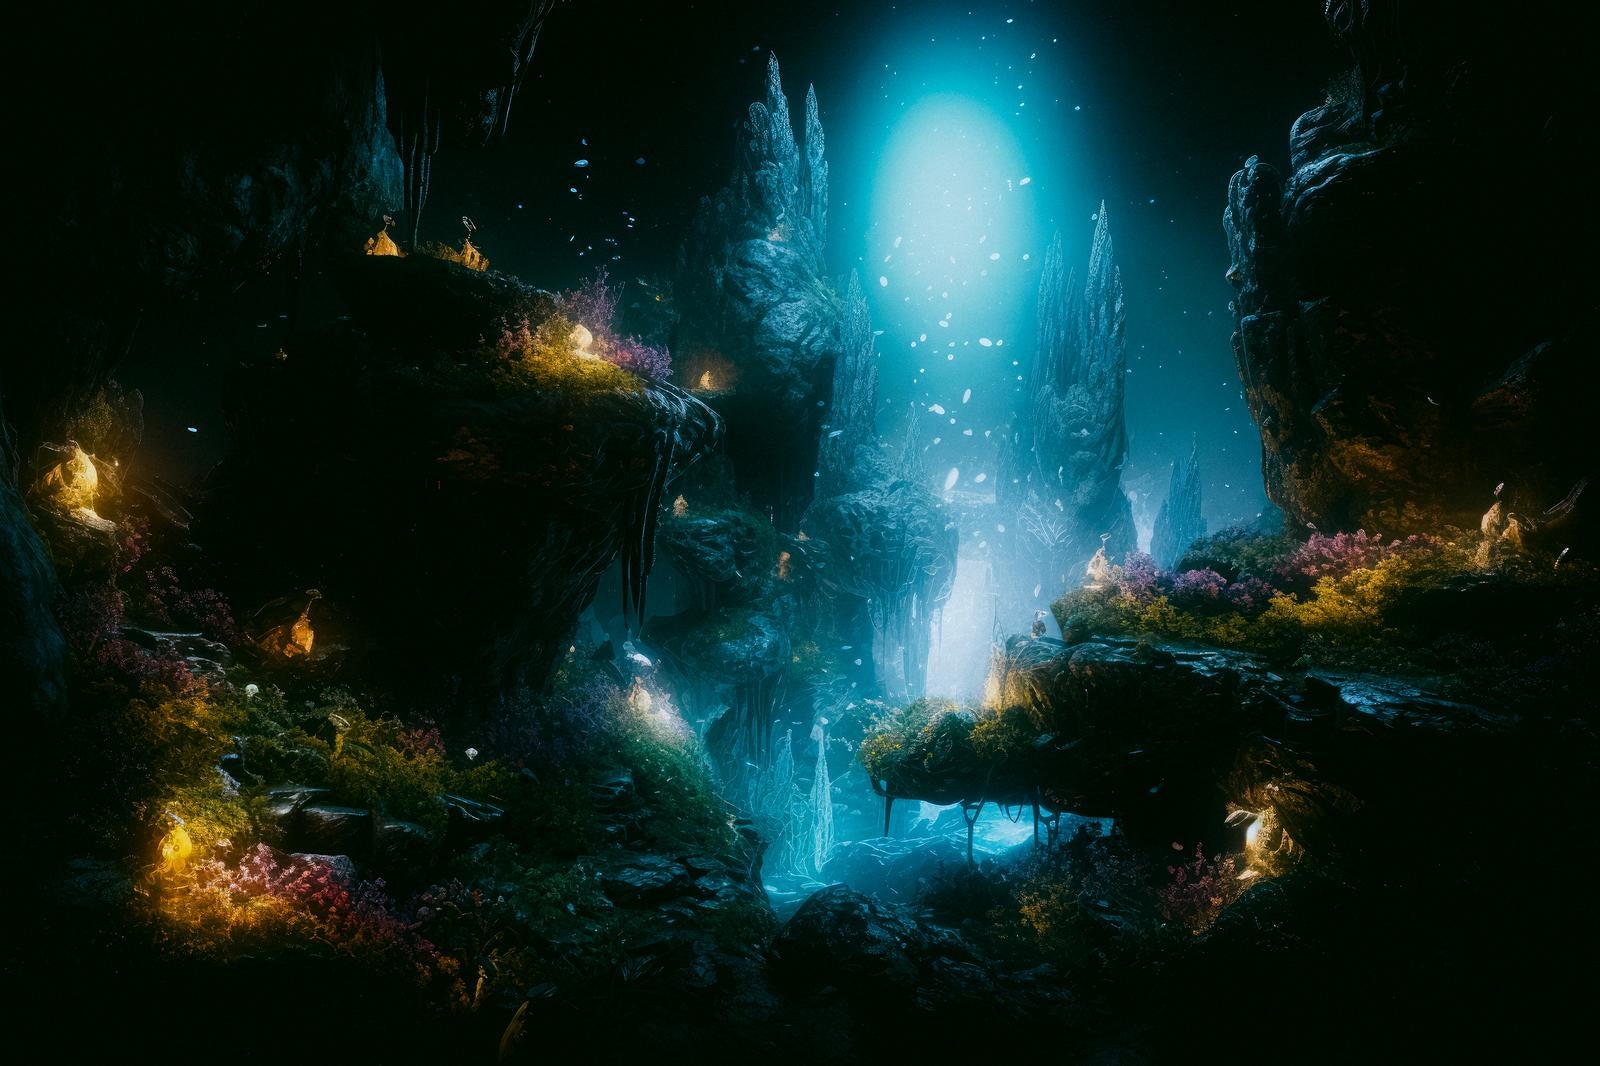 「地下洞窟とその神秘」の写真